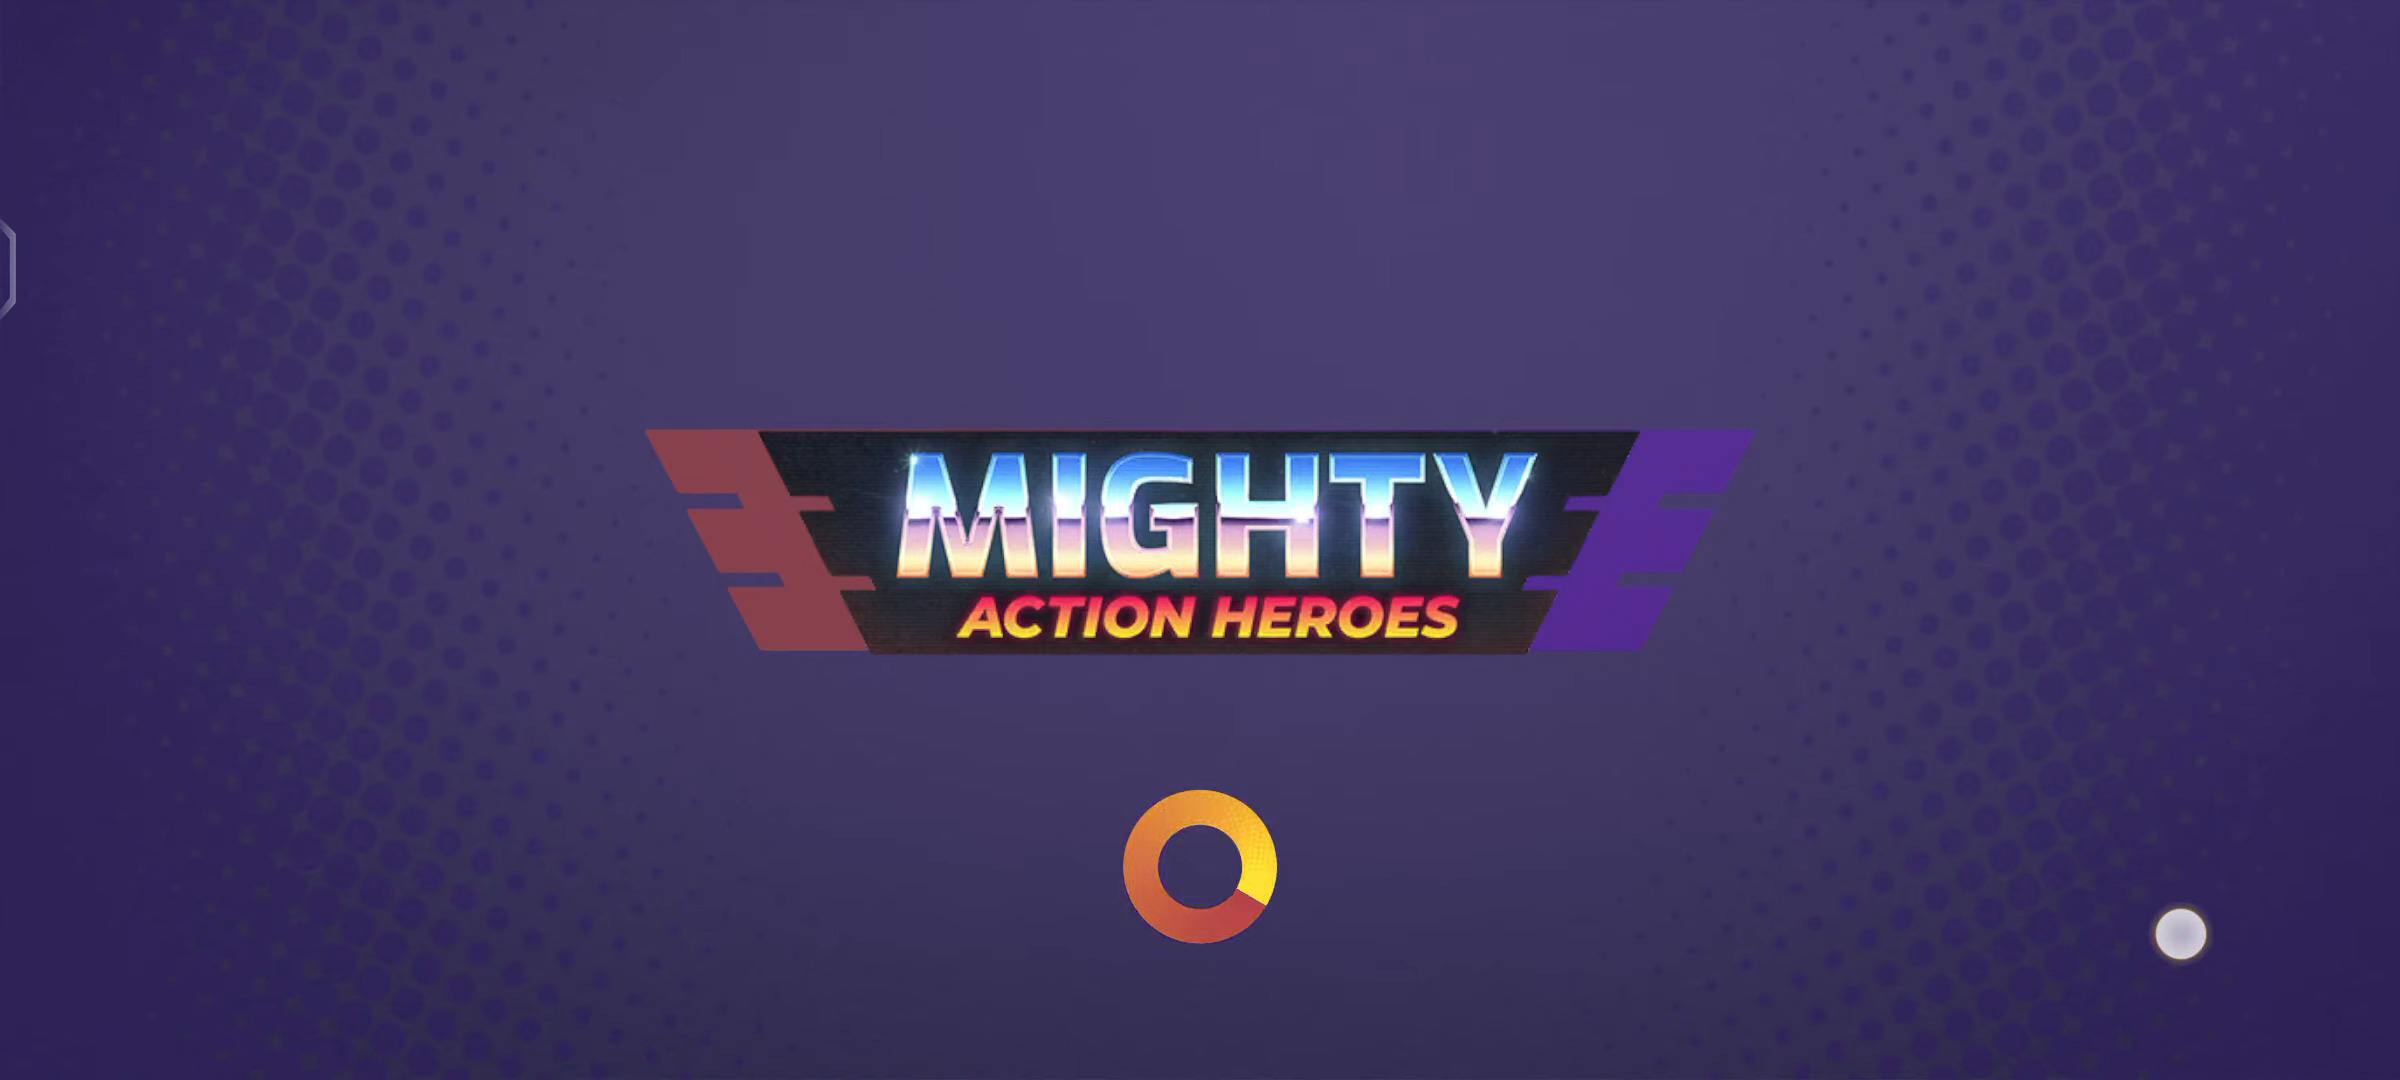 Скачать Mighty Action Heroes: Android Изометрические шутеры игра на телефон и планшет.